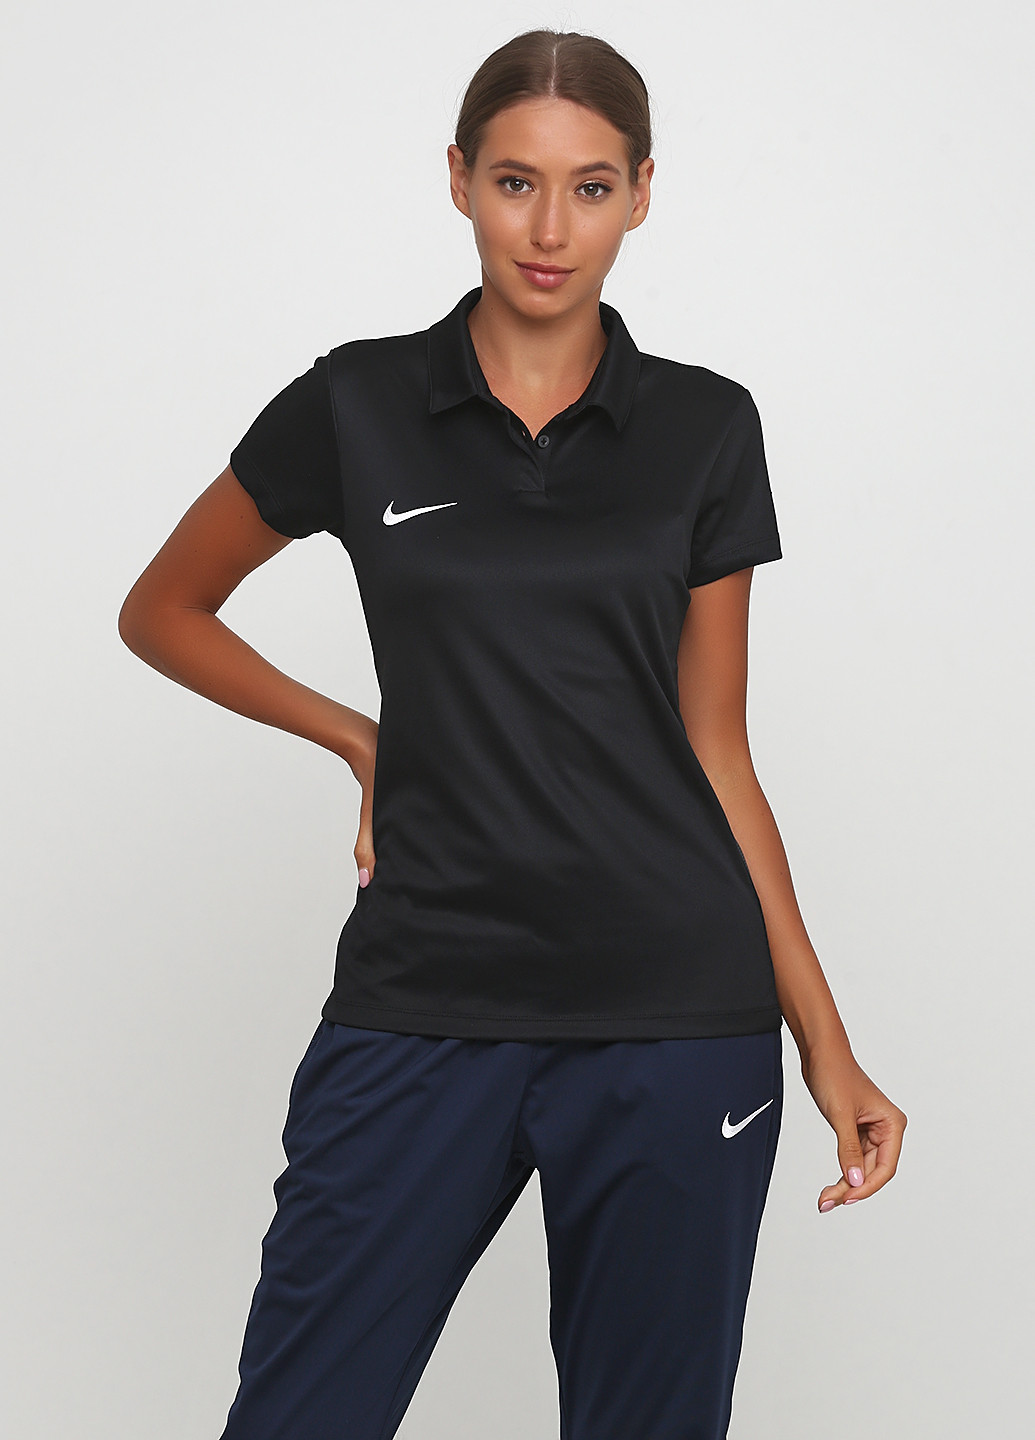 Футболка Nike Women's Dry Academy18 Football Polo 899986-010